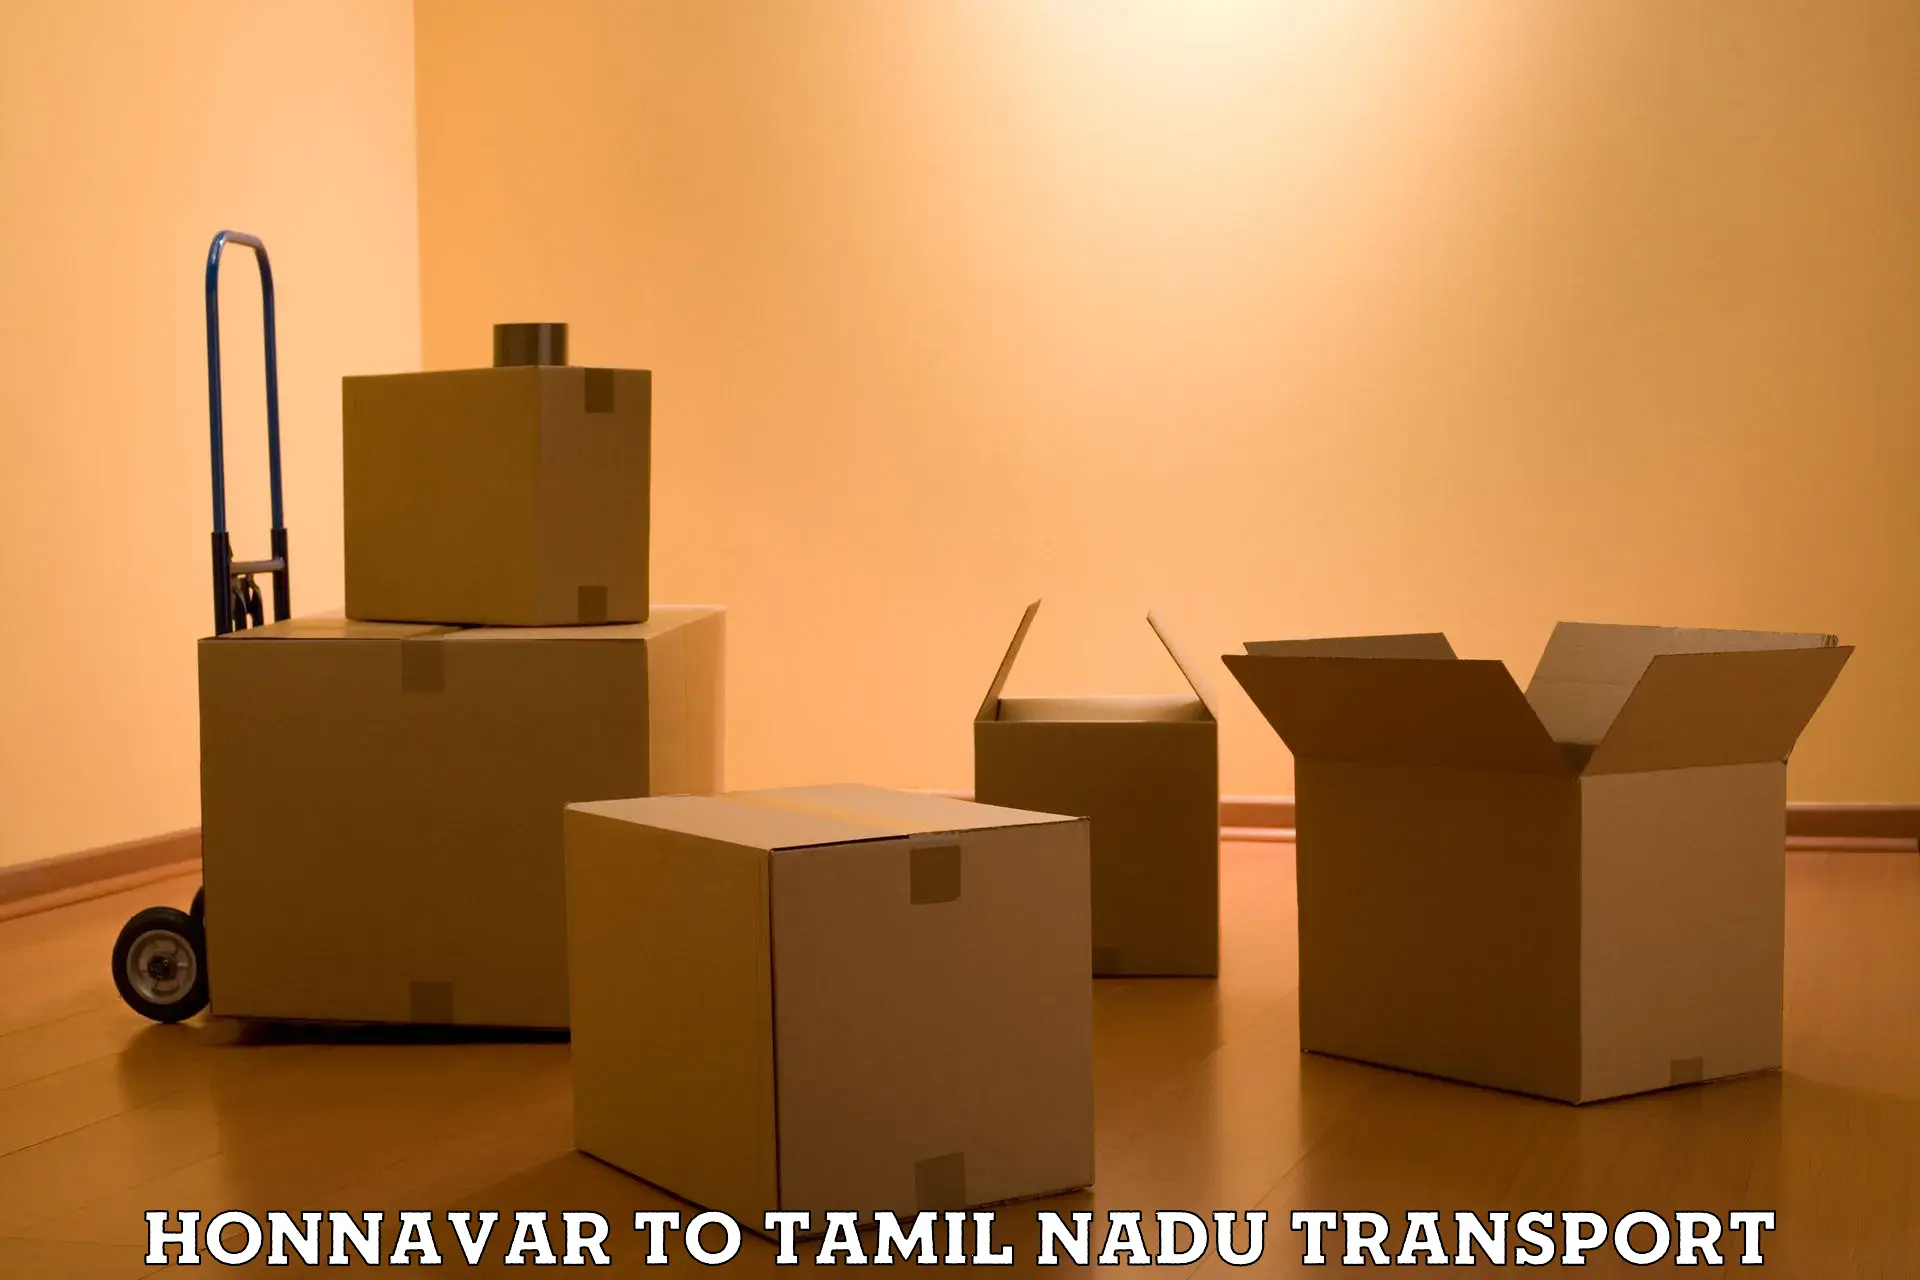 Furniture transport service Honnavar to Rasipuram